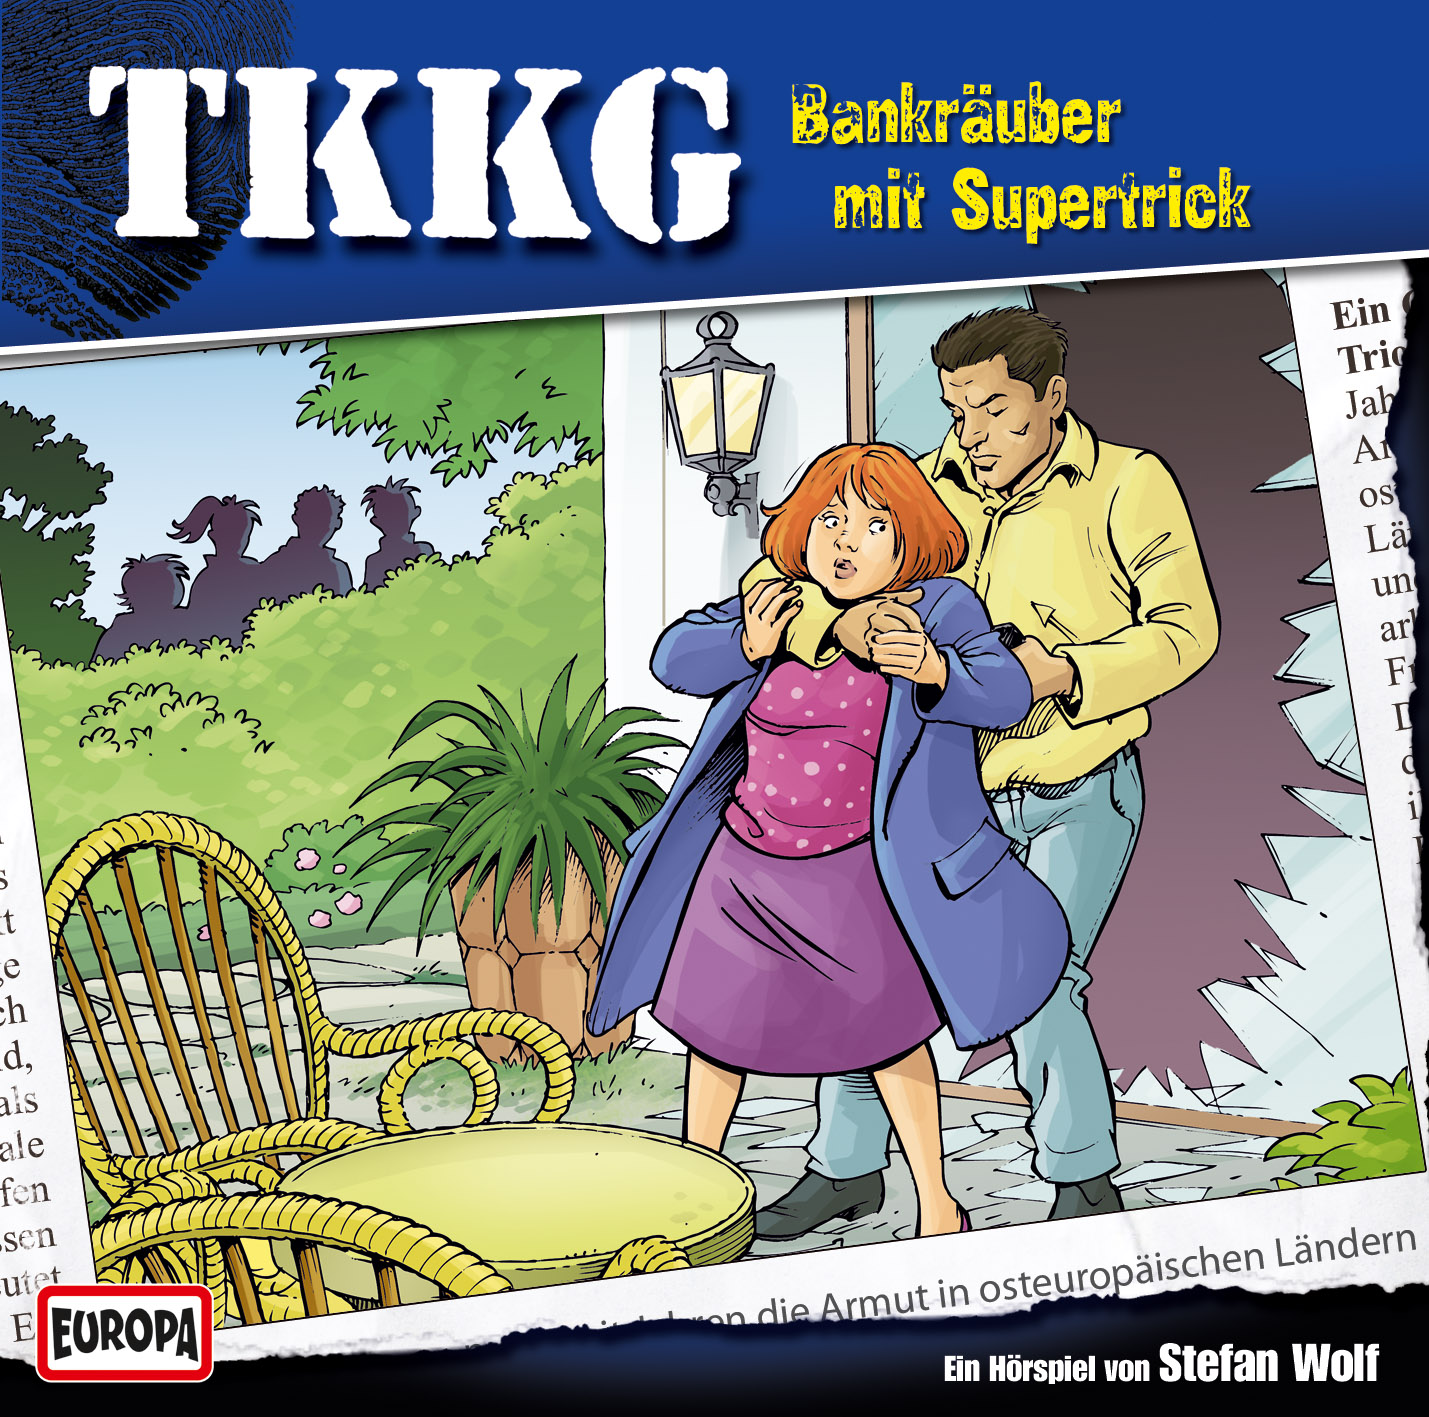 TKKG: Bankräuber mit Supertrick